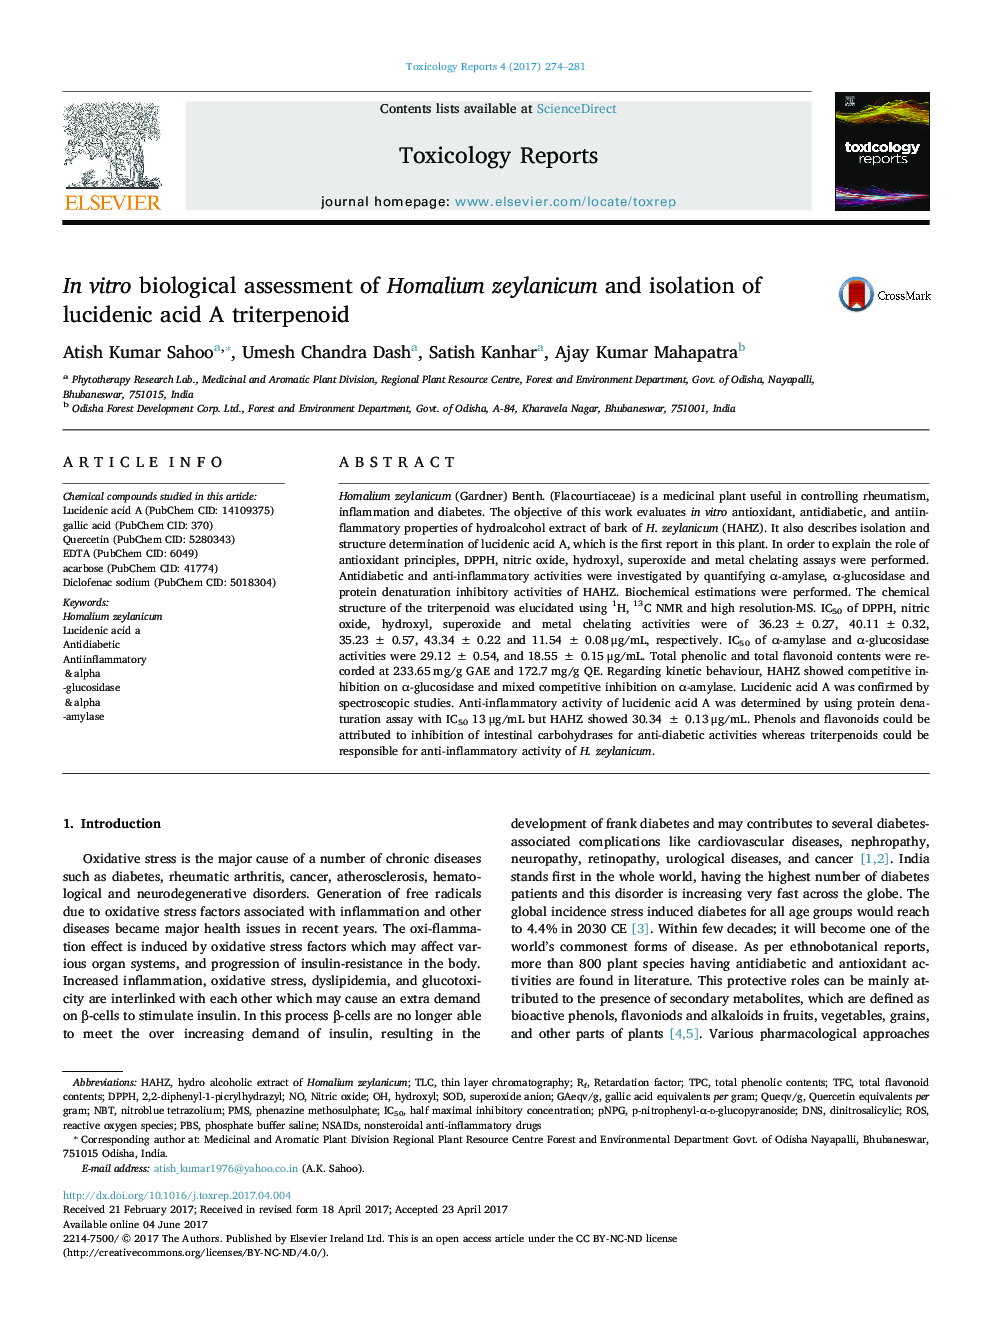 In vitro biological assessment of Homalium zeylanicum and isolation of lucidenic acid A triterpenoid